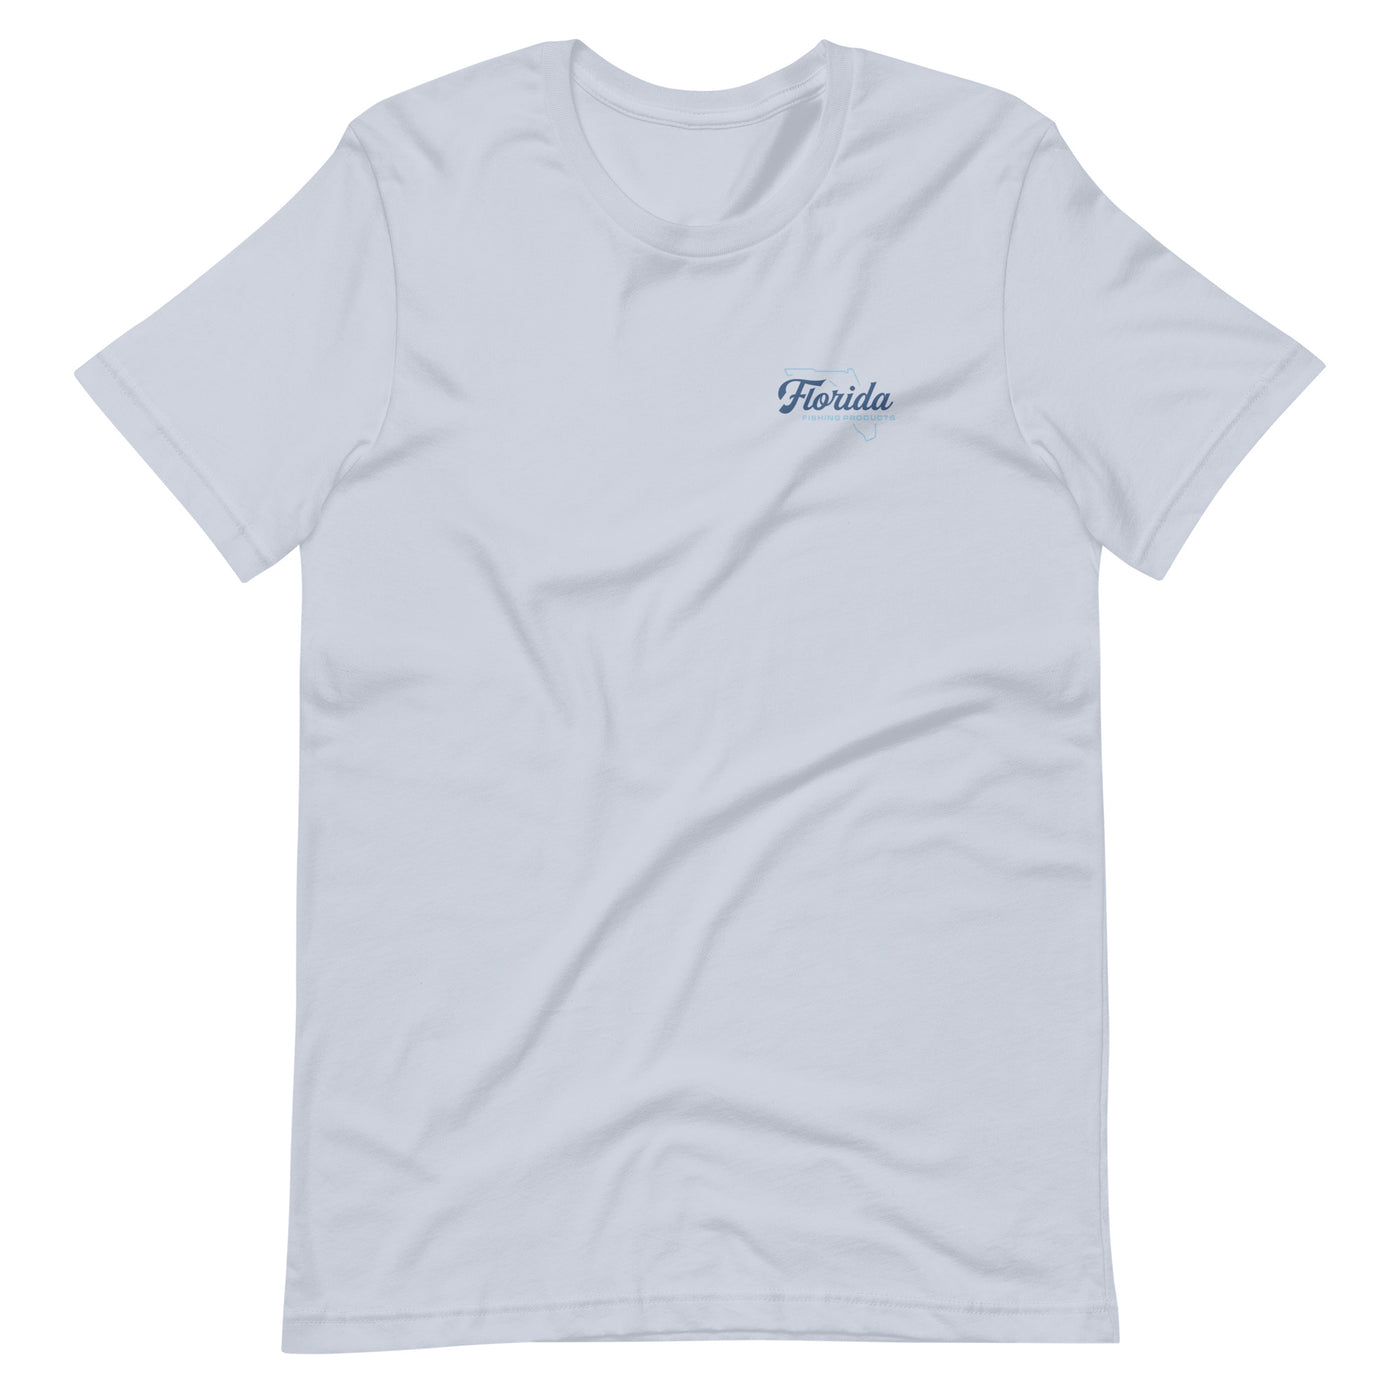 FFP Stingray Shirt - Light Blue